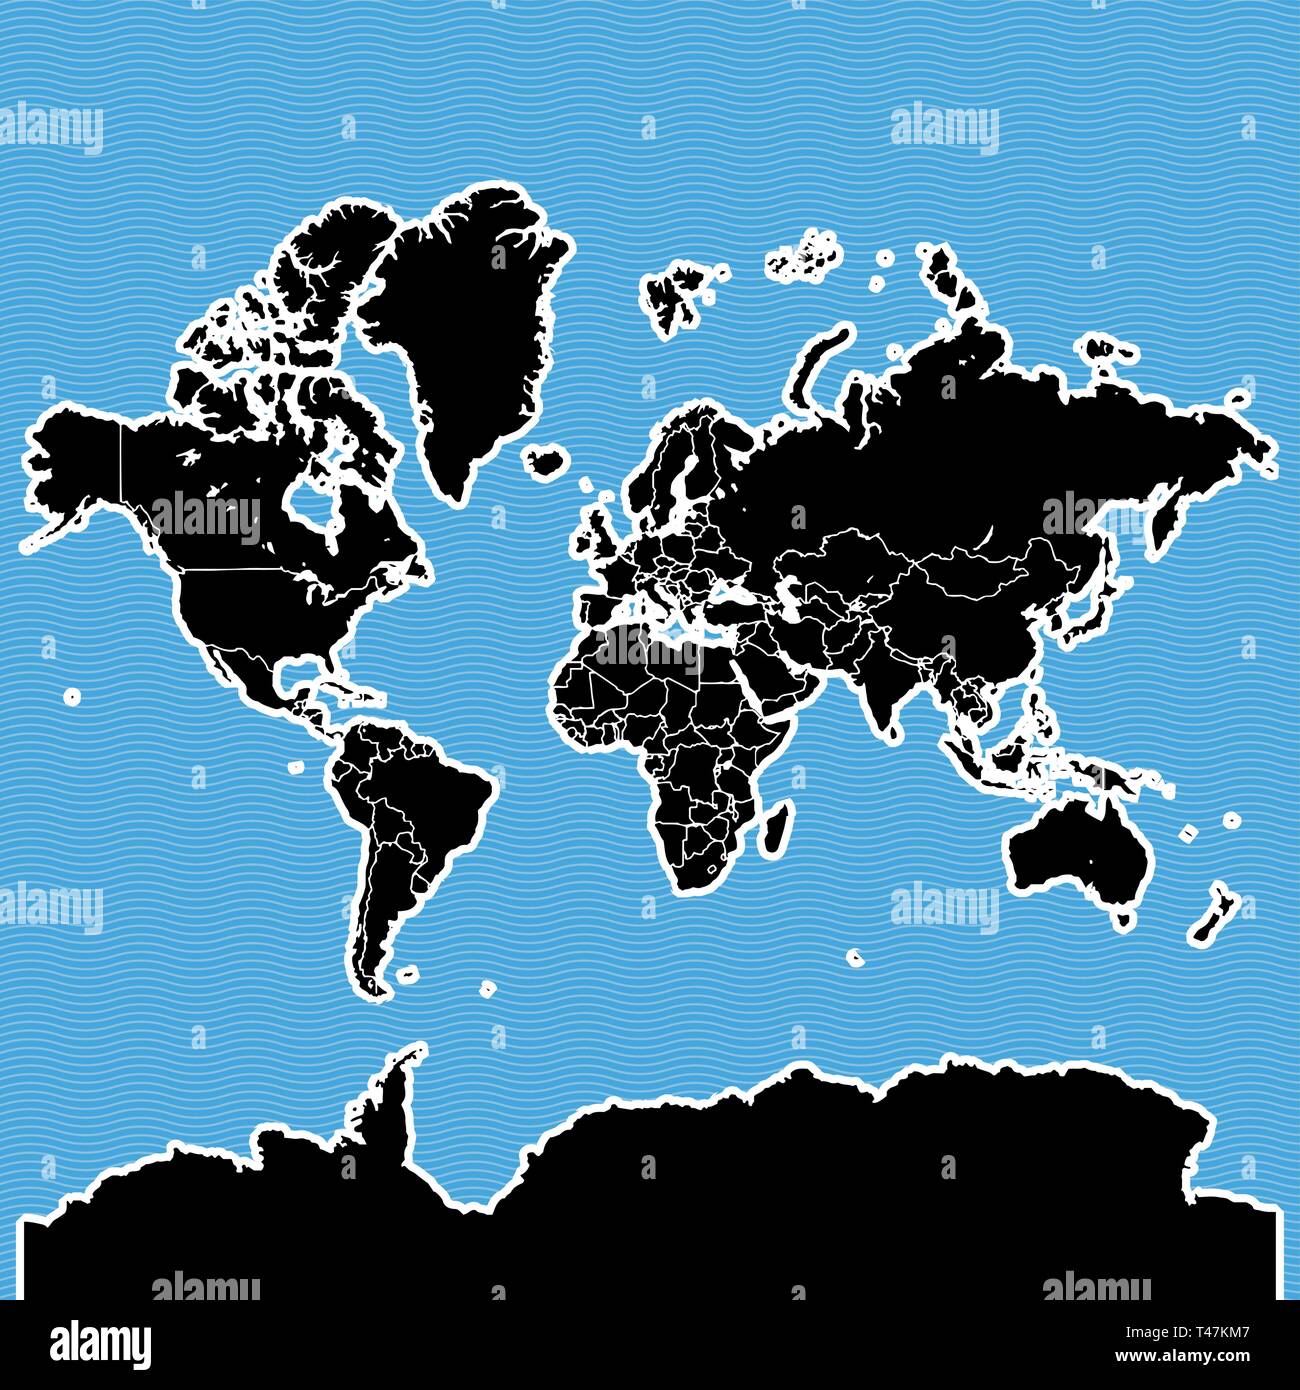 Welt Karte als Insel. Karte auf Blue Wave Wasser Hintergrund getrennt. Stock Vektor